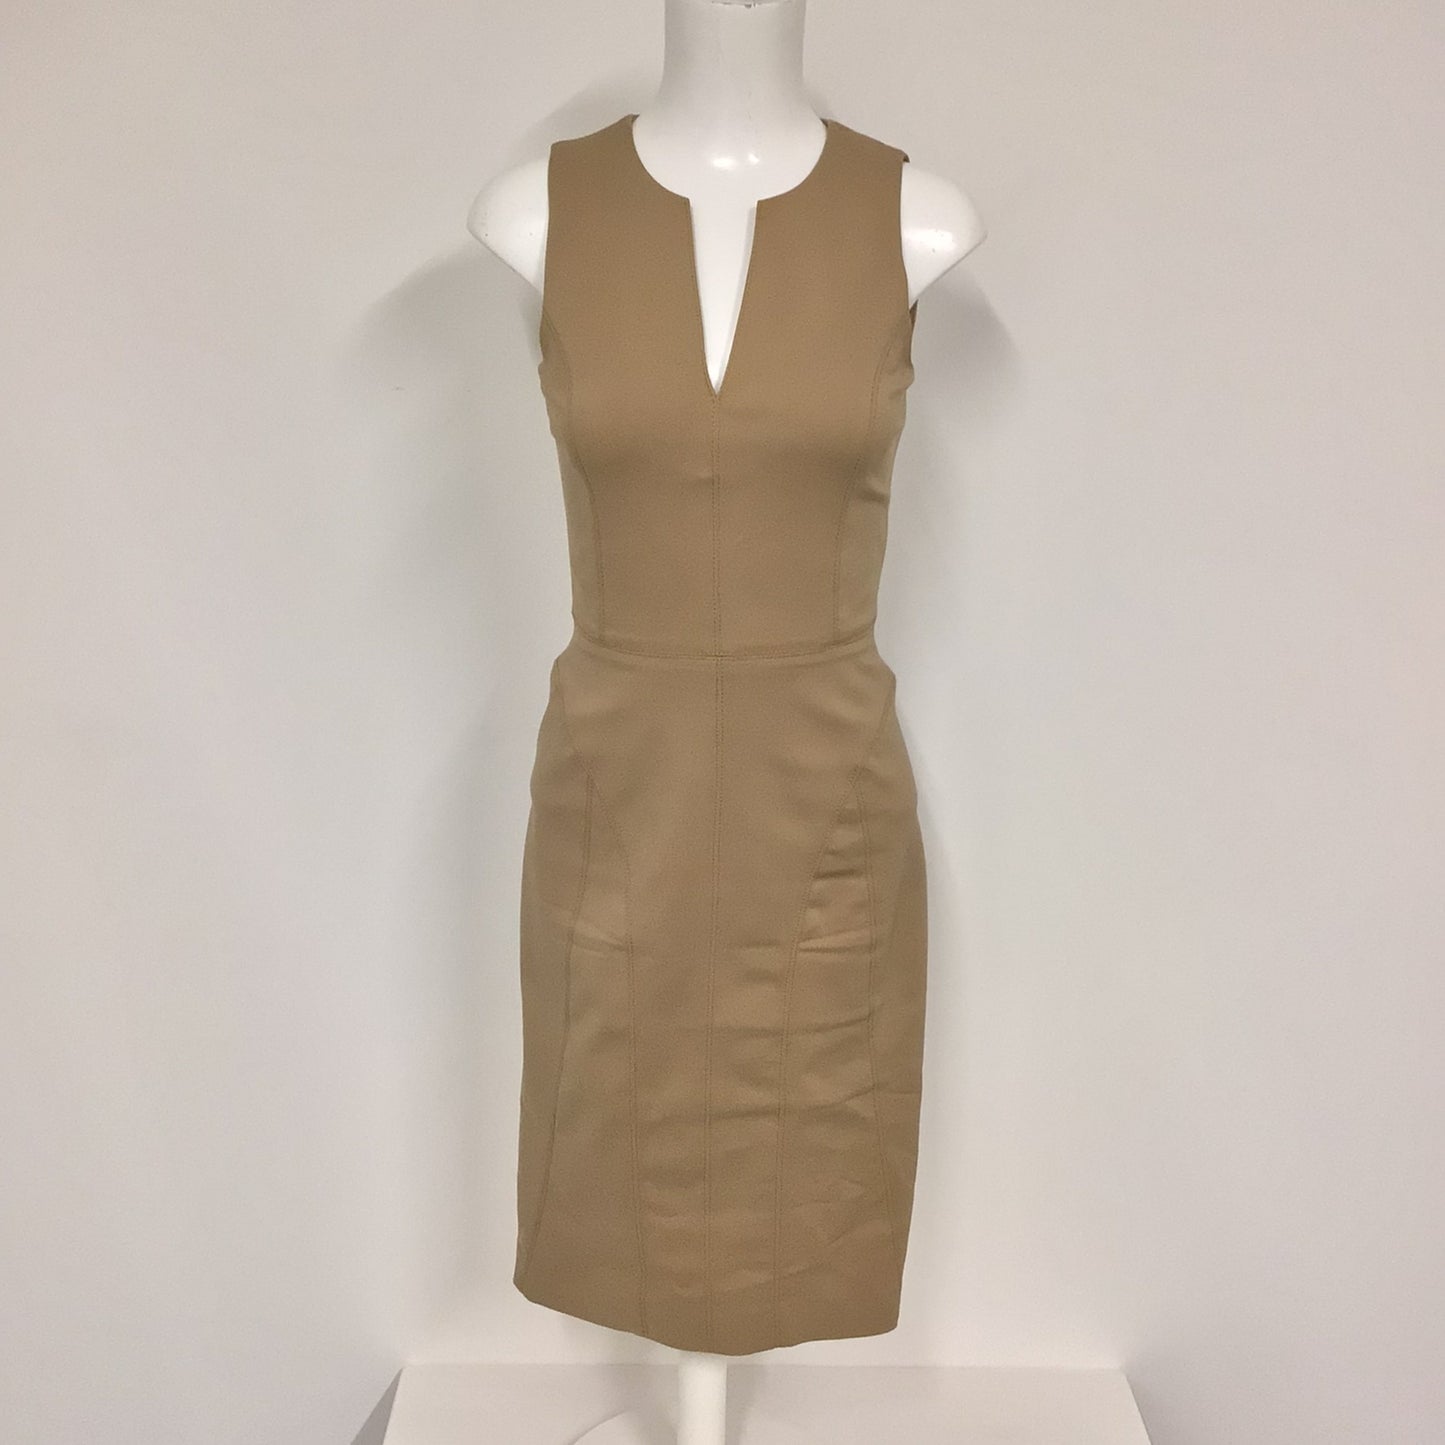 DKNY Beige V Neck Midi Dress Size XS (Size 2 on label)